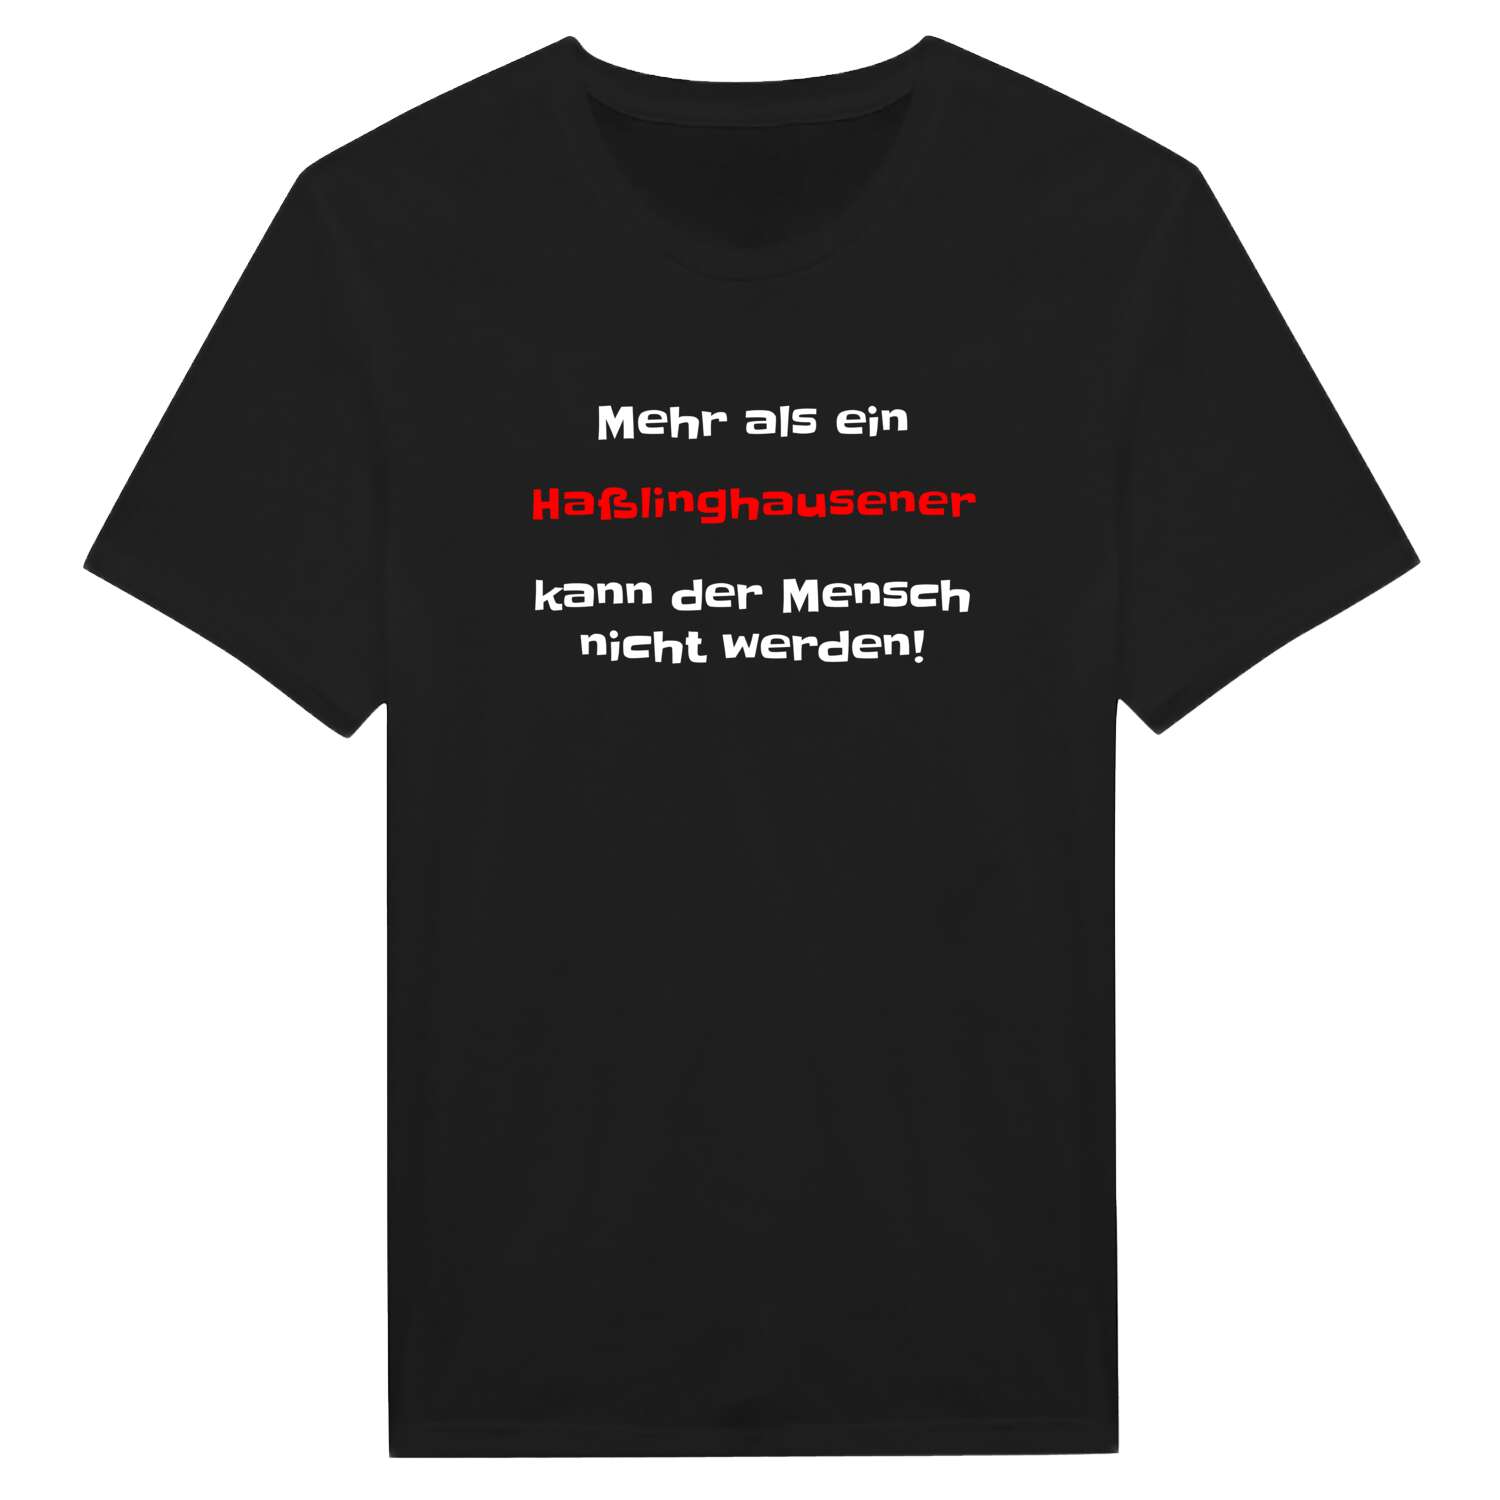 Haßlinghausen T-Shirt »Mehr als ein«